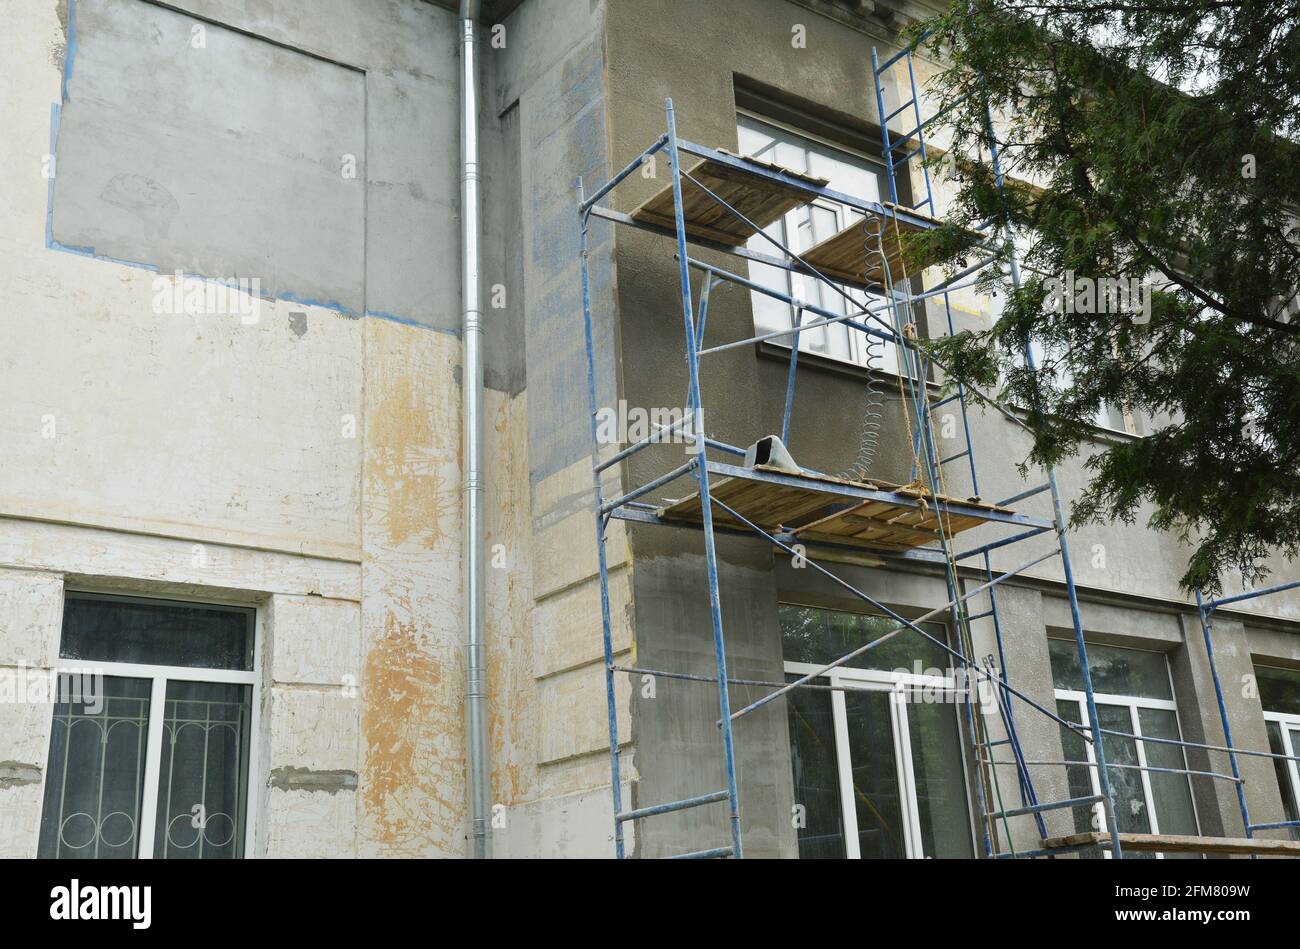 Gebäudereparatur und Fassadensanierung durch Verputzen der Fassadenwände und Stuckarbeiten. Verputzen der Fassade vor dem Lackieren. Stockfoto